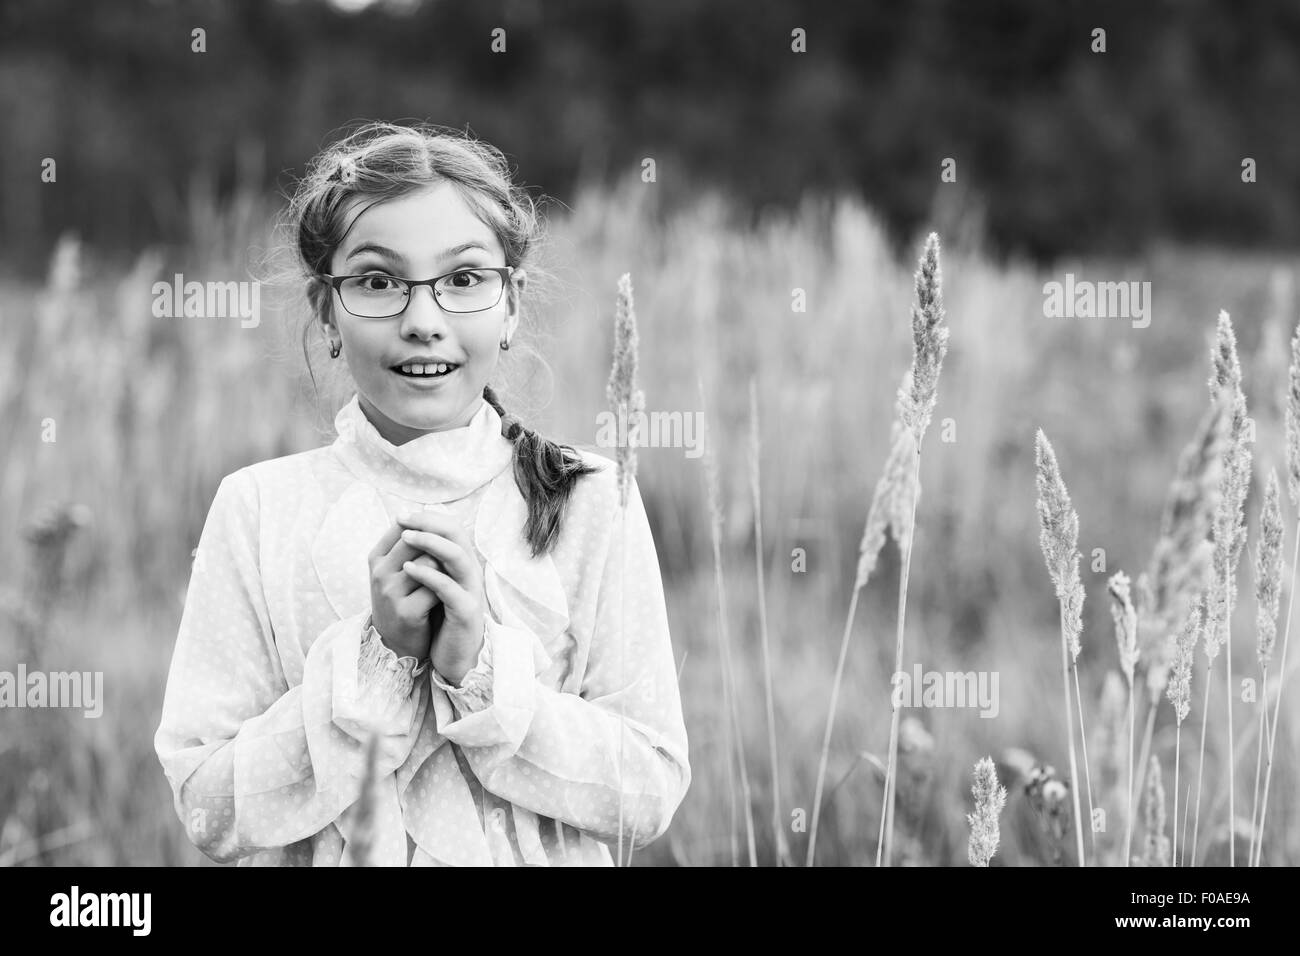 Adorable girl in glasses Stock Photo